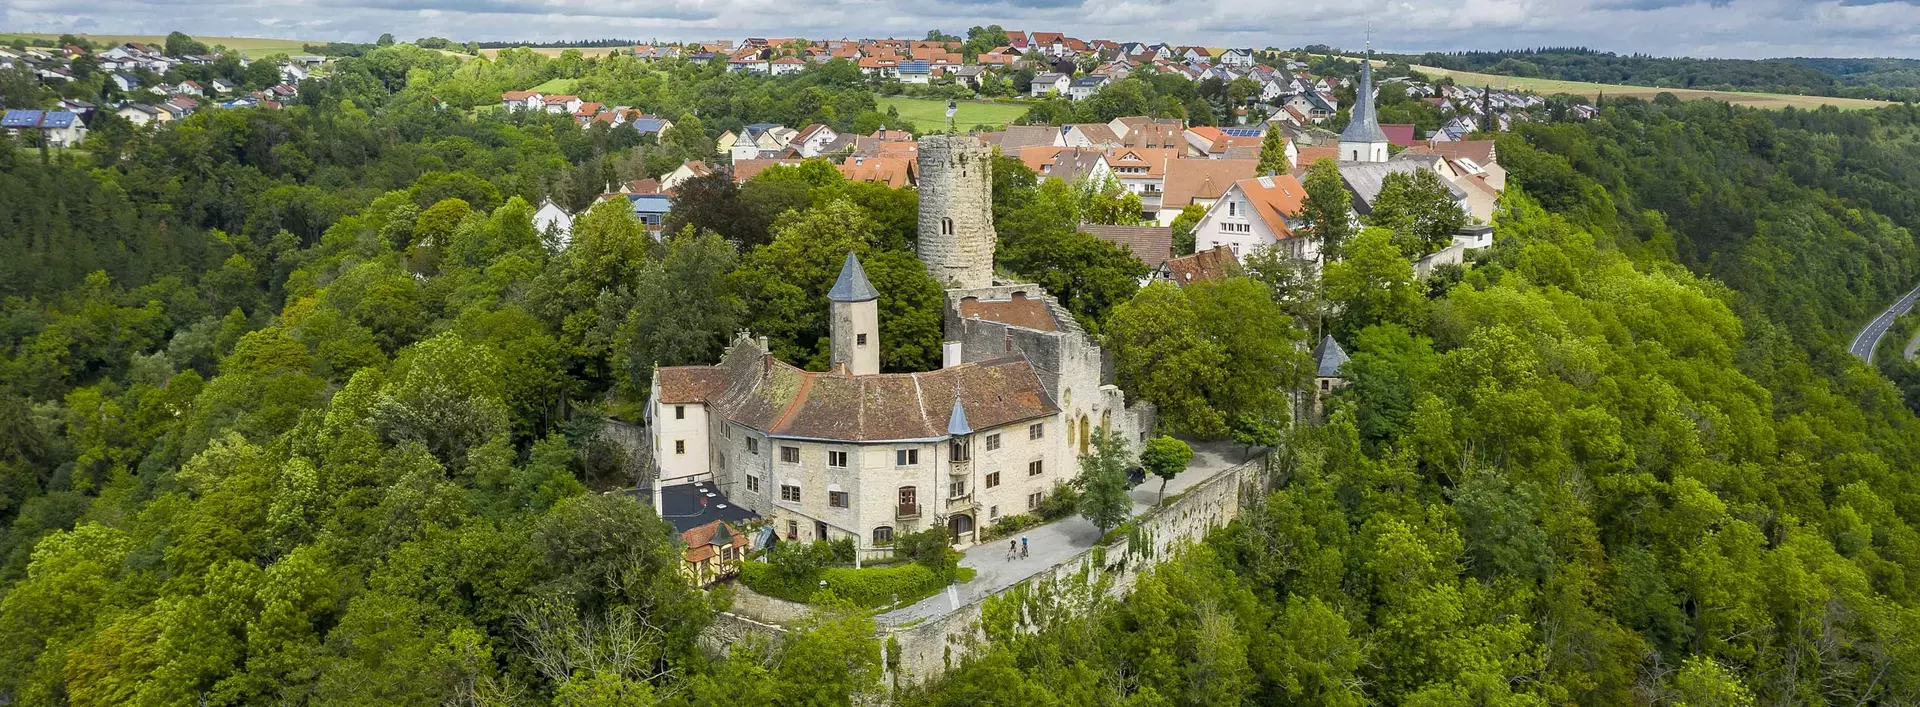 im Urlaub auf dem Bauernhof in Hohenlohe - Schwäbischer Wald die Burg Krautheim und das Burgmuseum besuchen